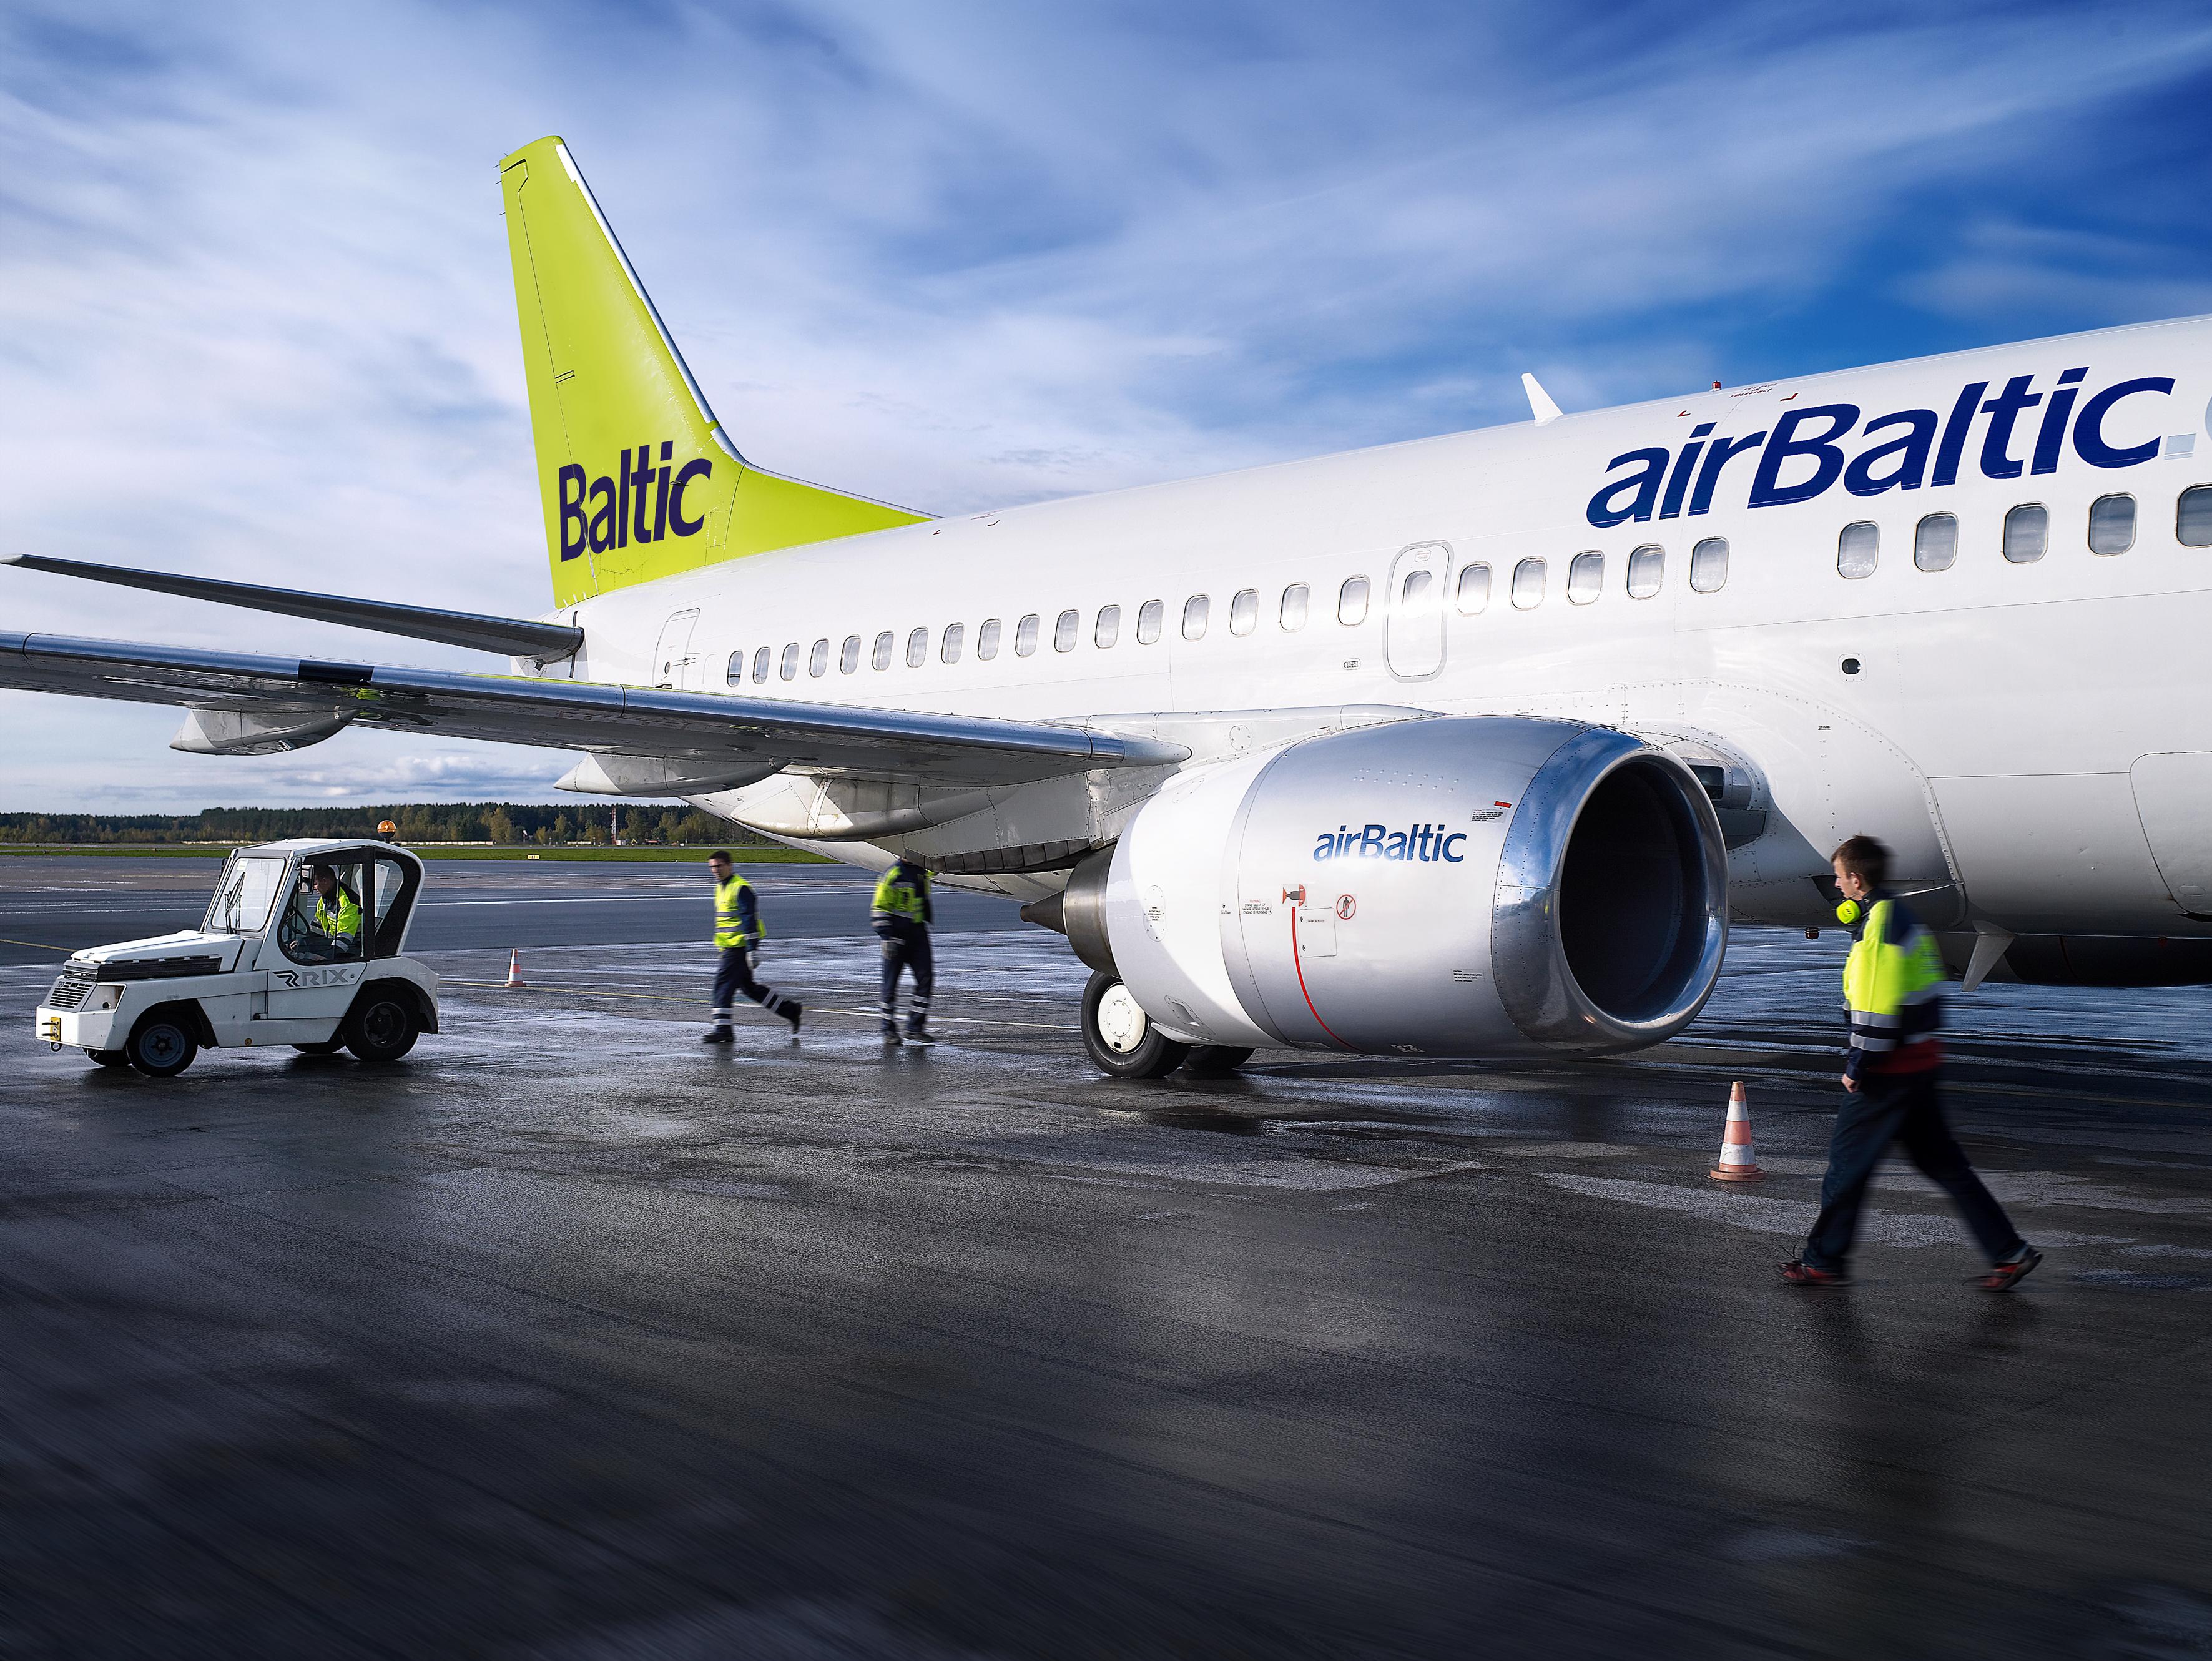 Норвежский суд отправил пилота airBaltic в тюрьму почти на год за пьянство перед вылетом